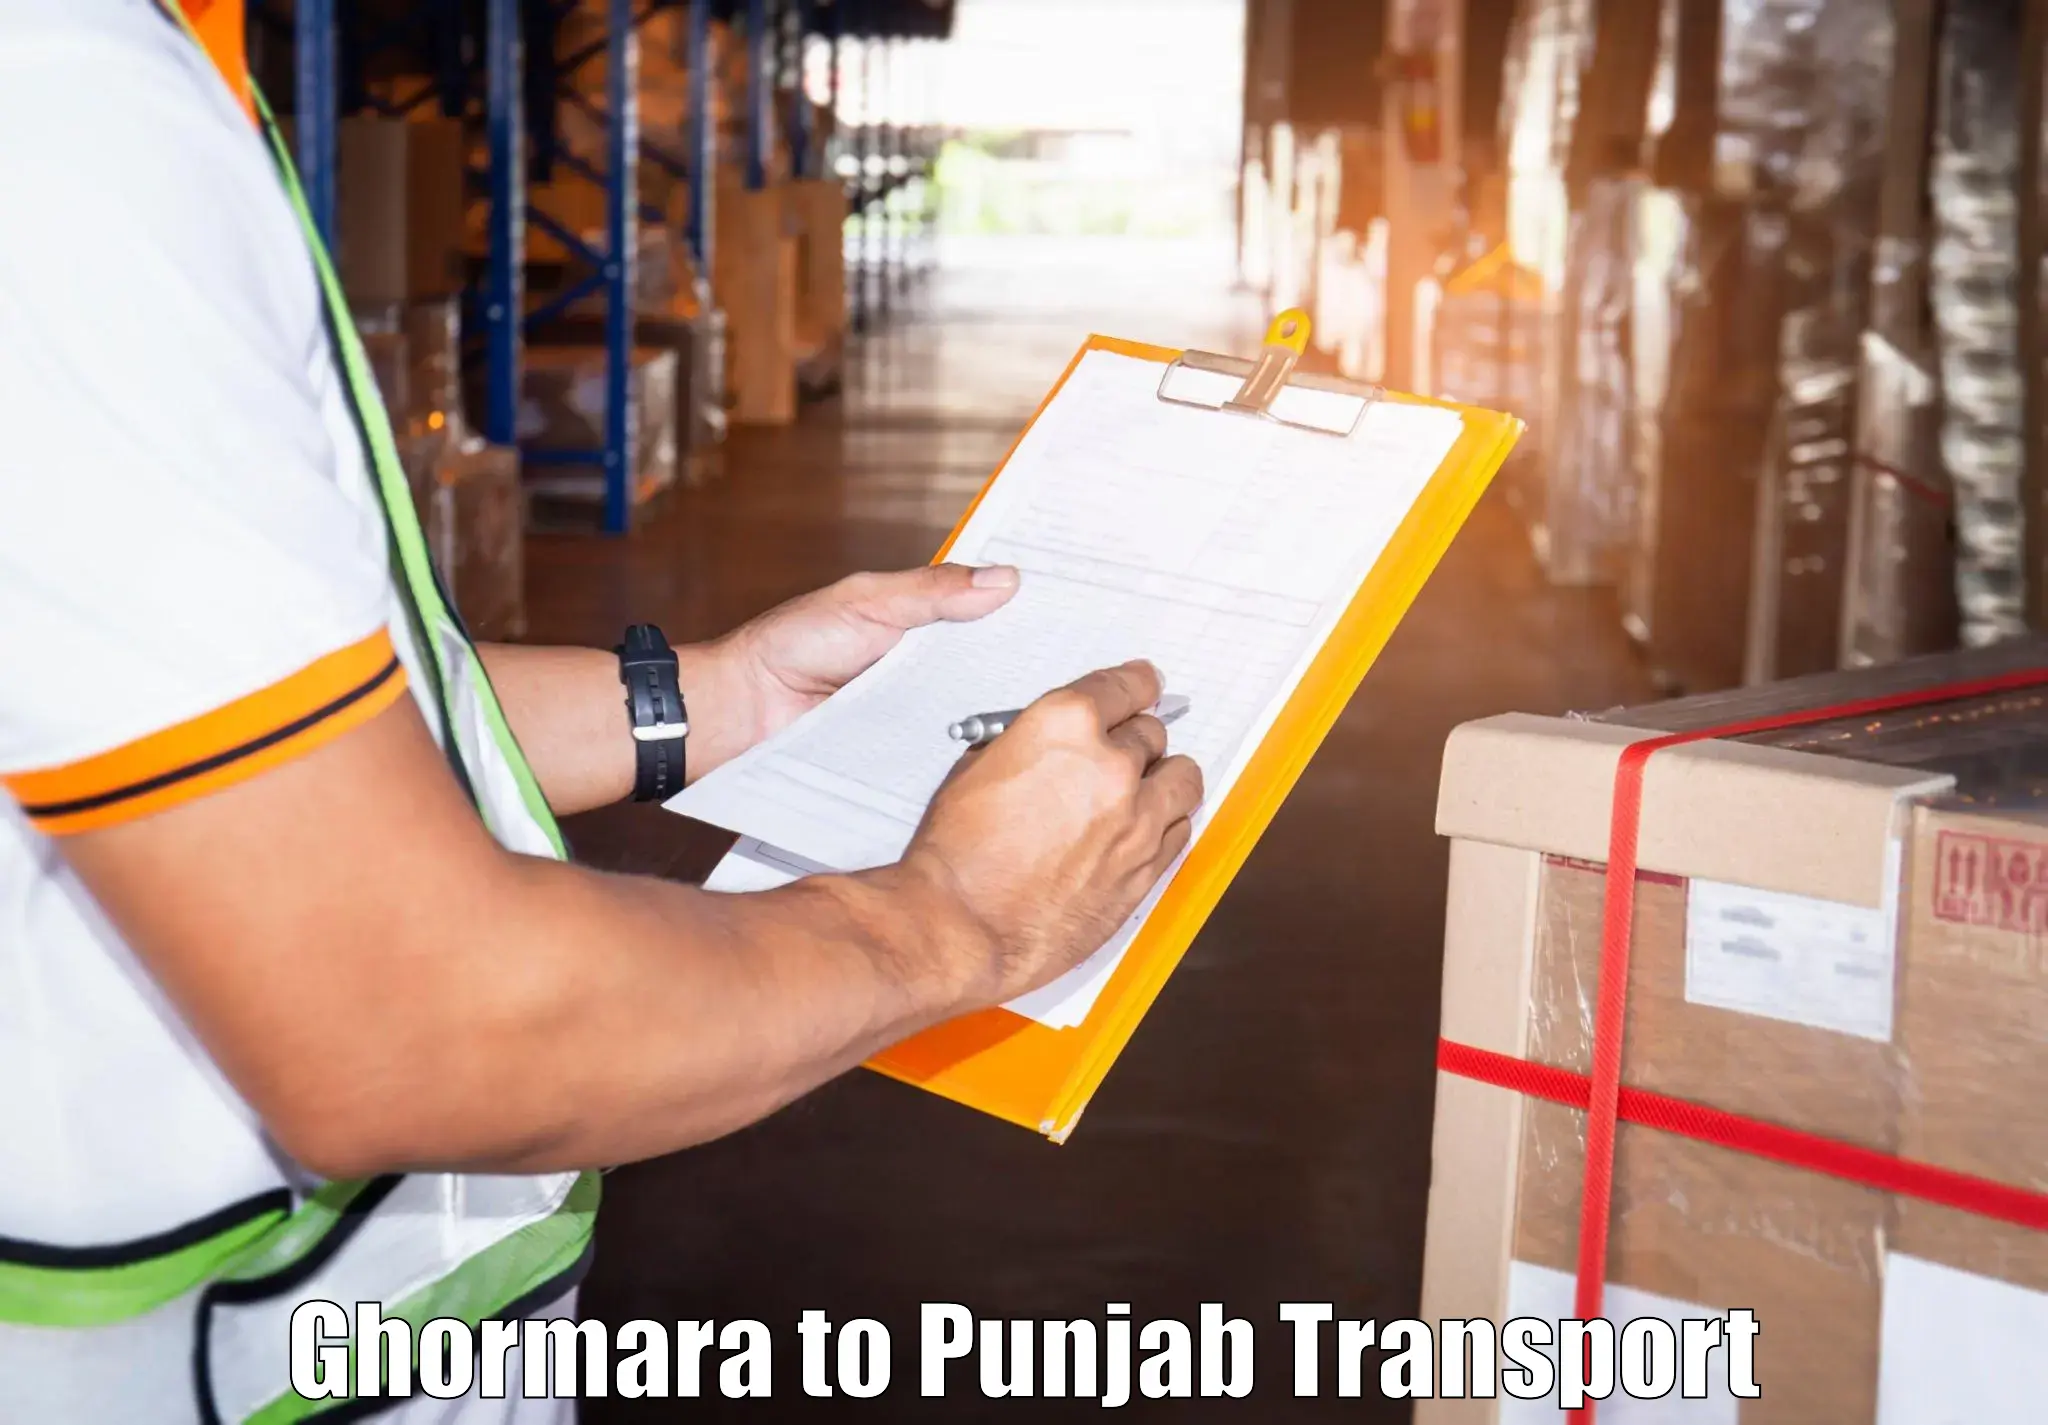 Furniture transport service Ghormara to Mandi Gobindgarh